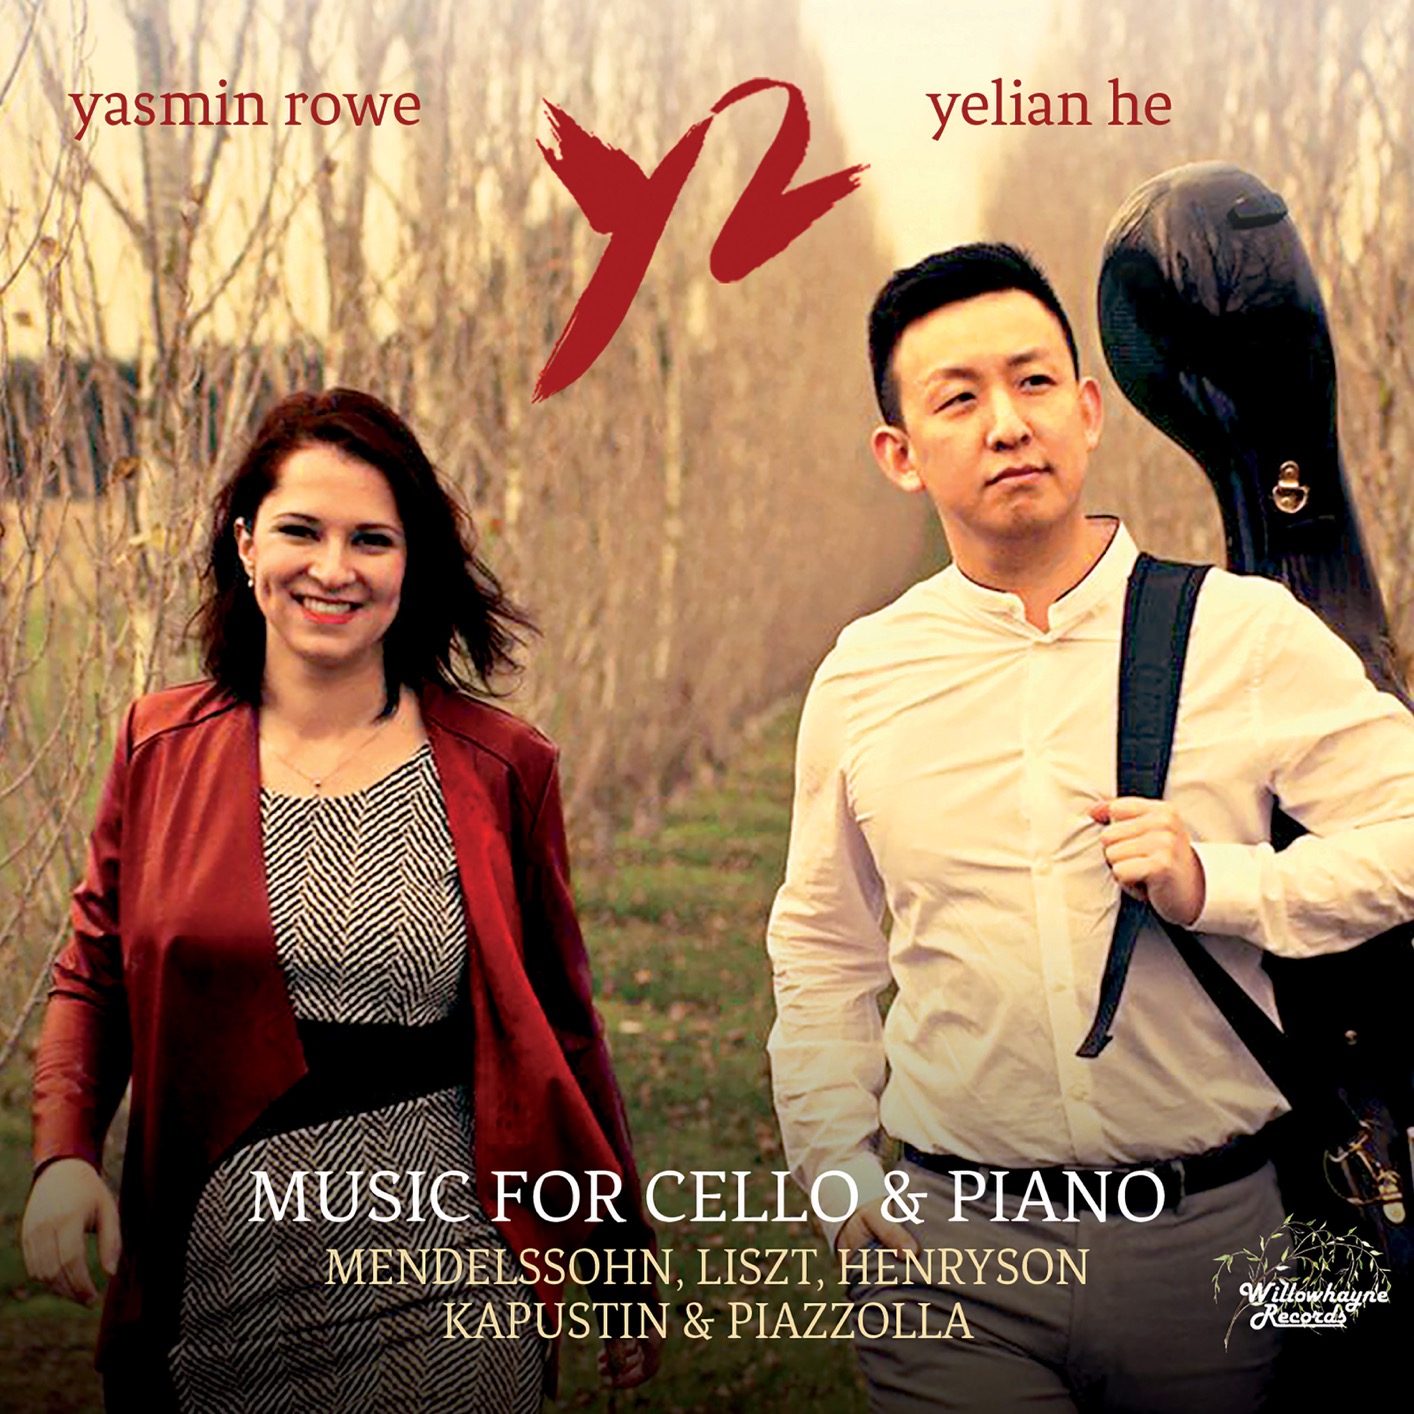 Yasmin Rowe & Yelian He - Music for Cello & Piano (2018) [FLAC 24bit/192kHz]